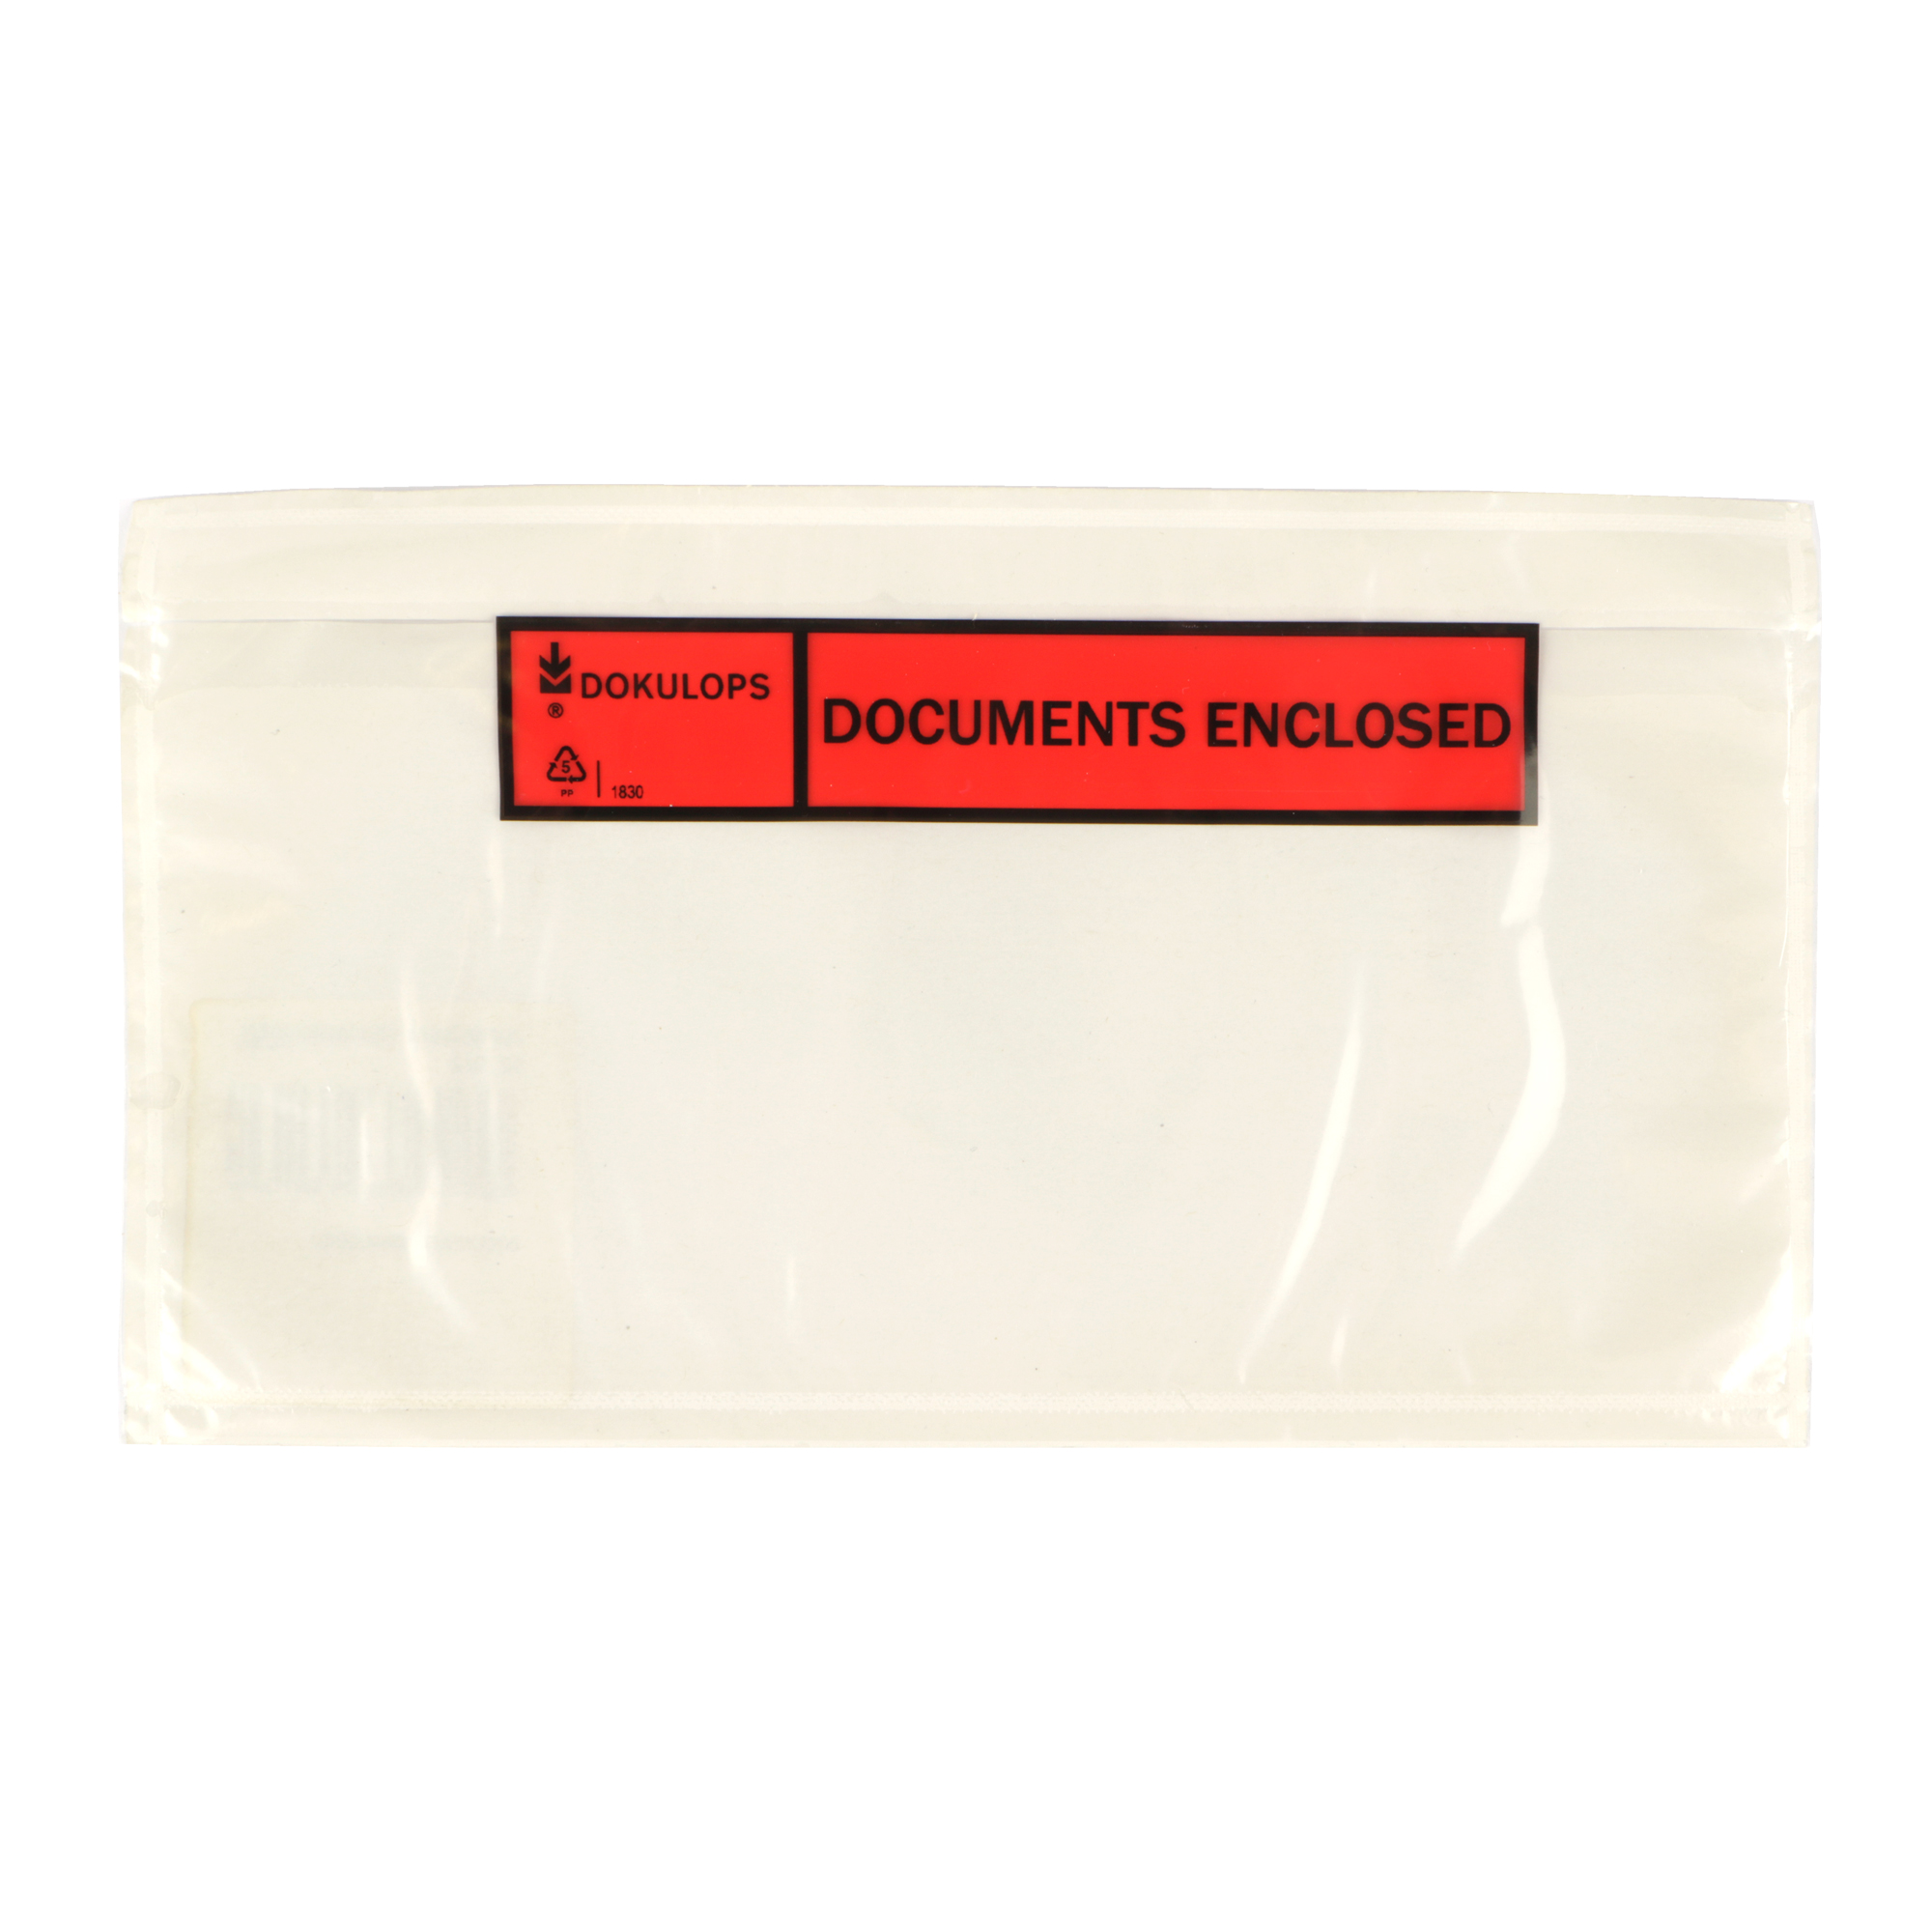 Afbeelding van Ds à 1000 PP paklijst envelop 22x11,5 cm documents enclosed